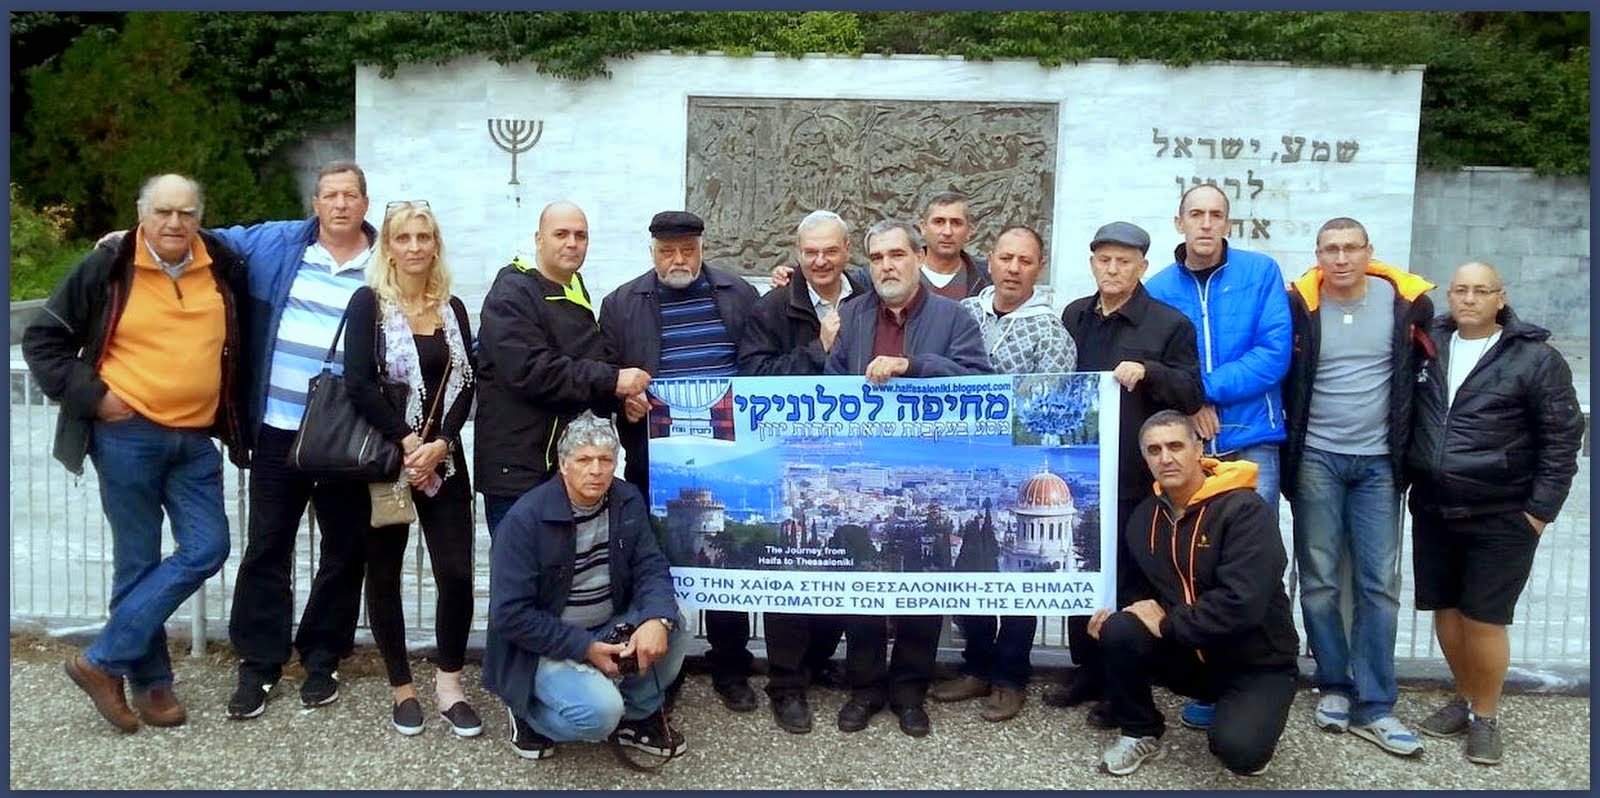 חברי המשלחת "מחיפה לסלוניקי 2014" , בכניסה לבית העלמין היהודי בעיר חאלקידה (כלקיס) ביוון.